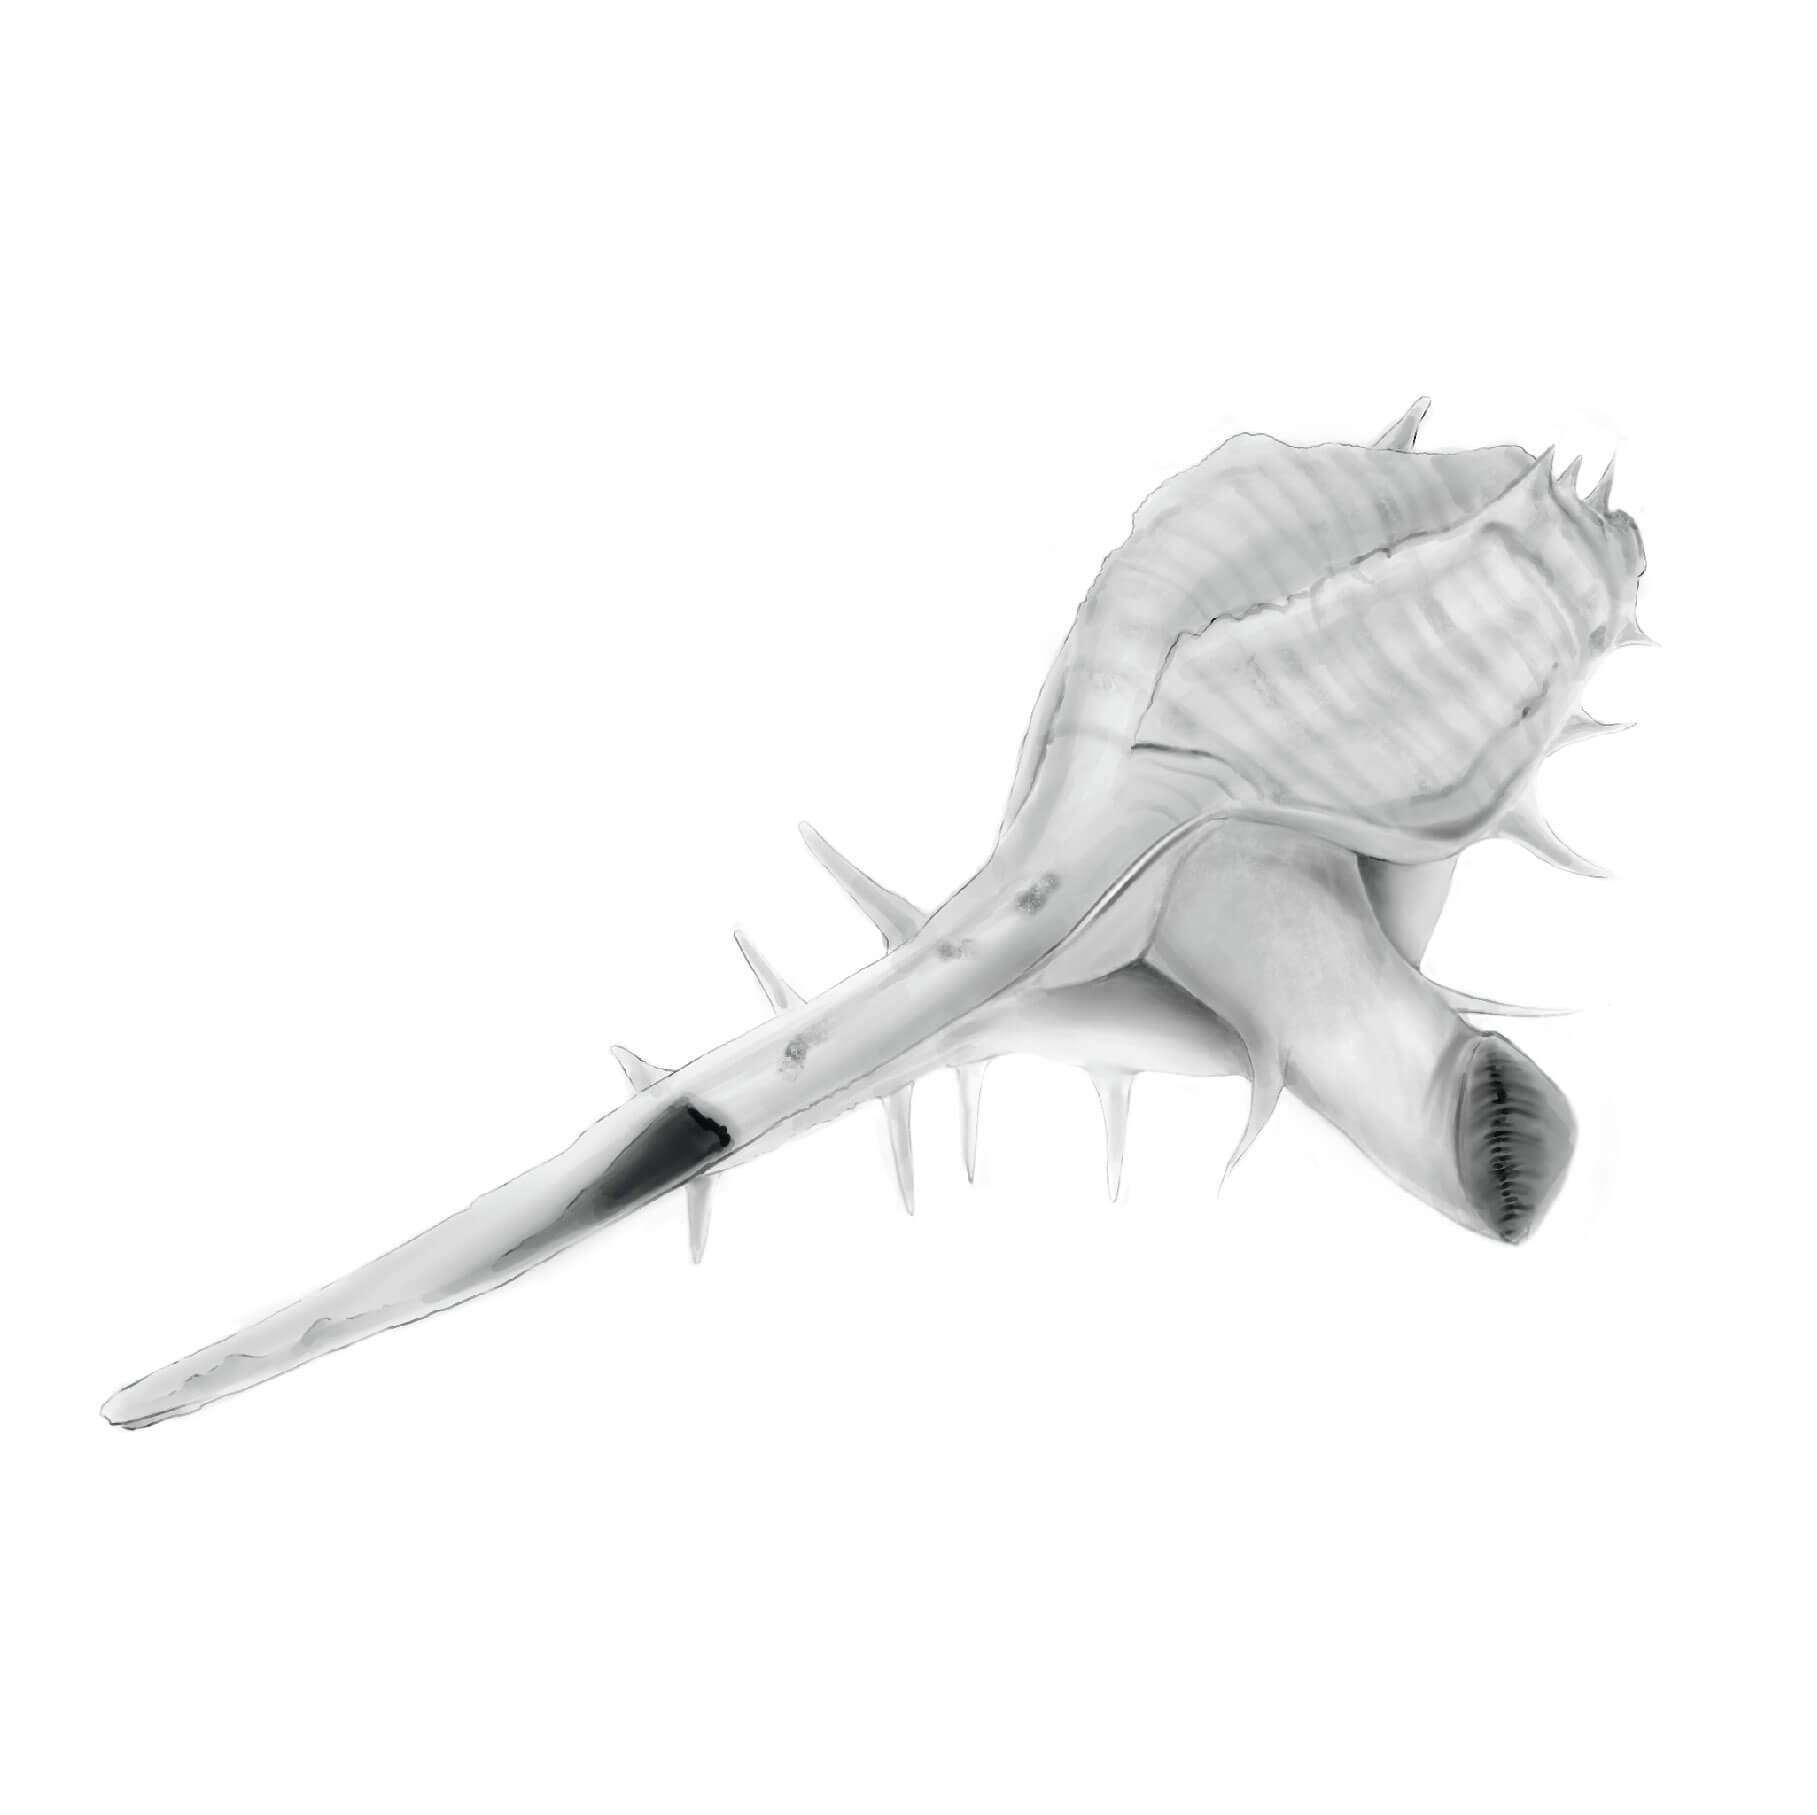 2D Drawing of Murex snail